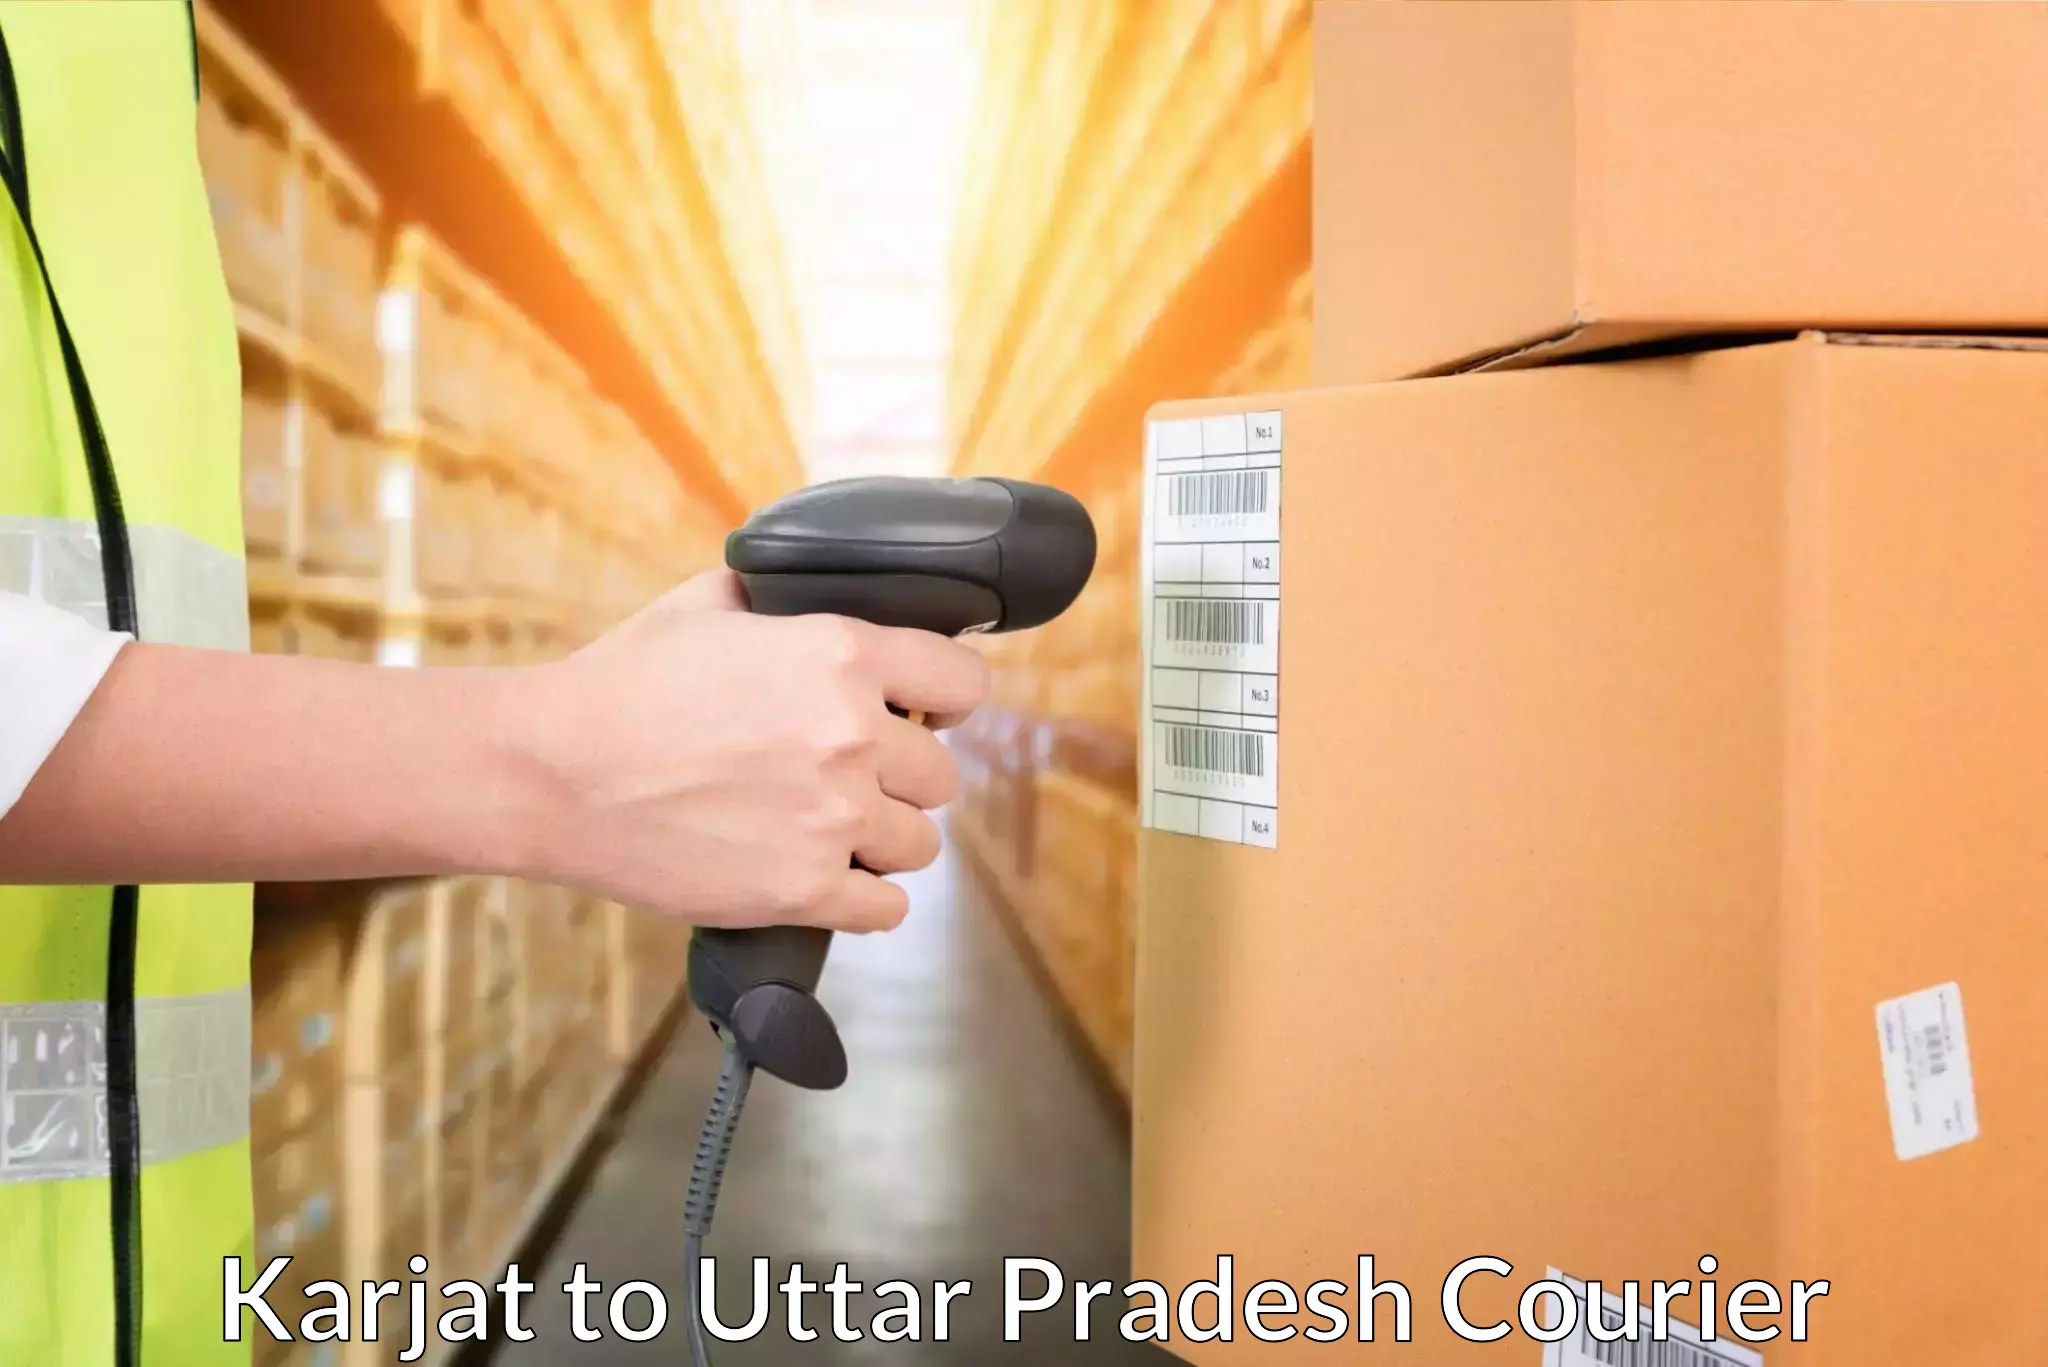 Cash on delivery service in Karjat to Vrindavan